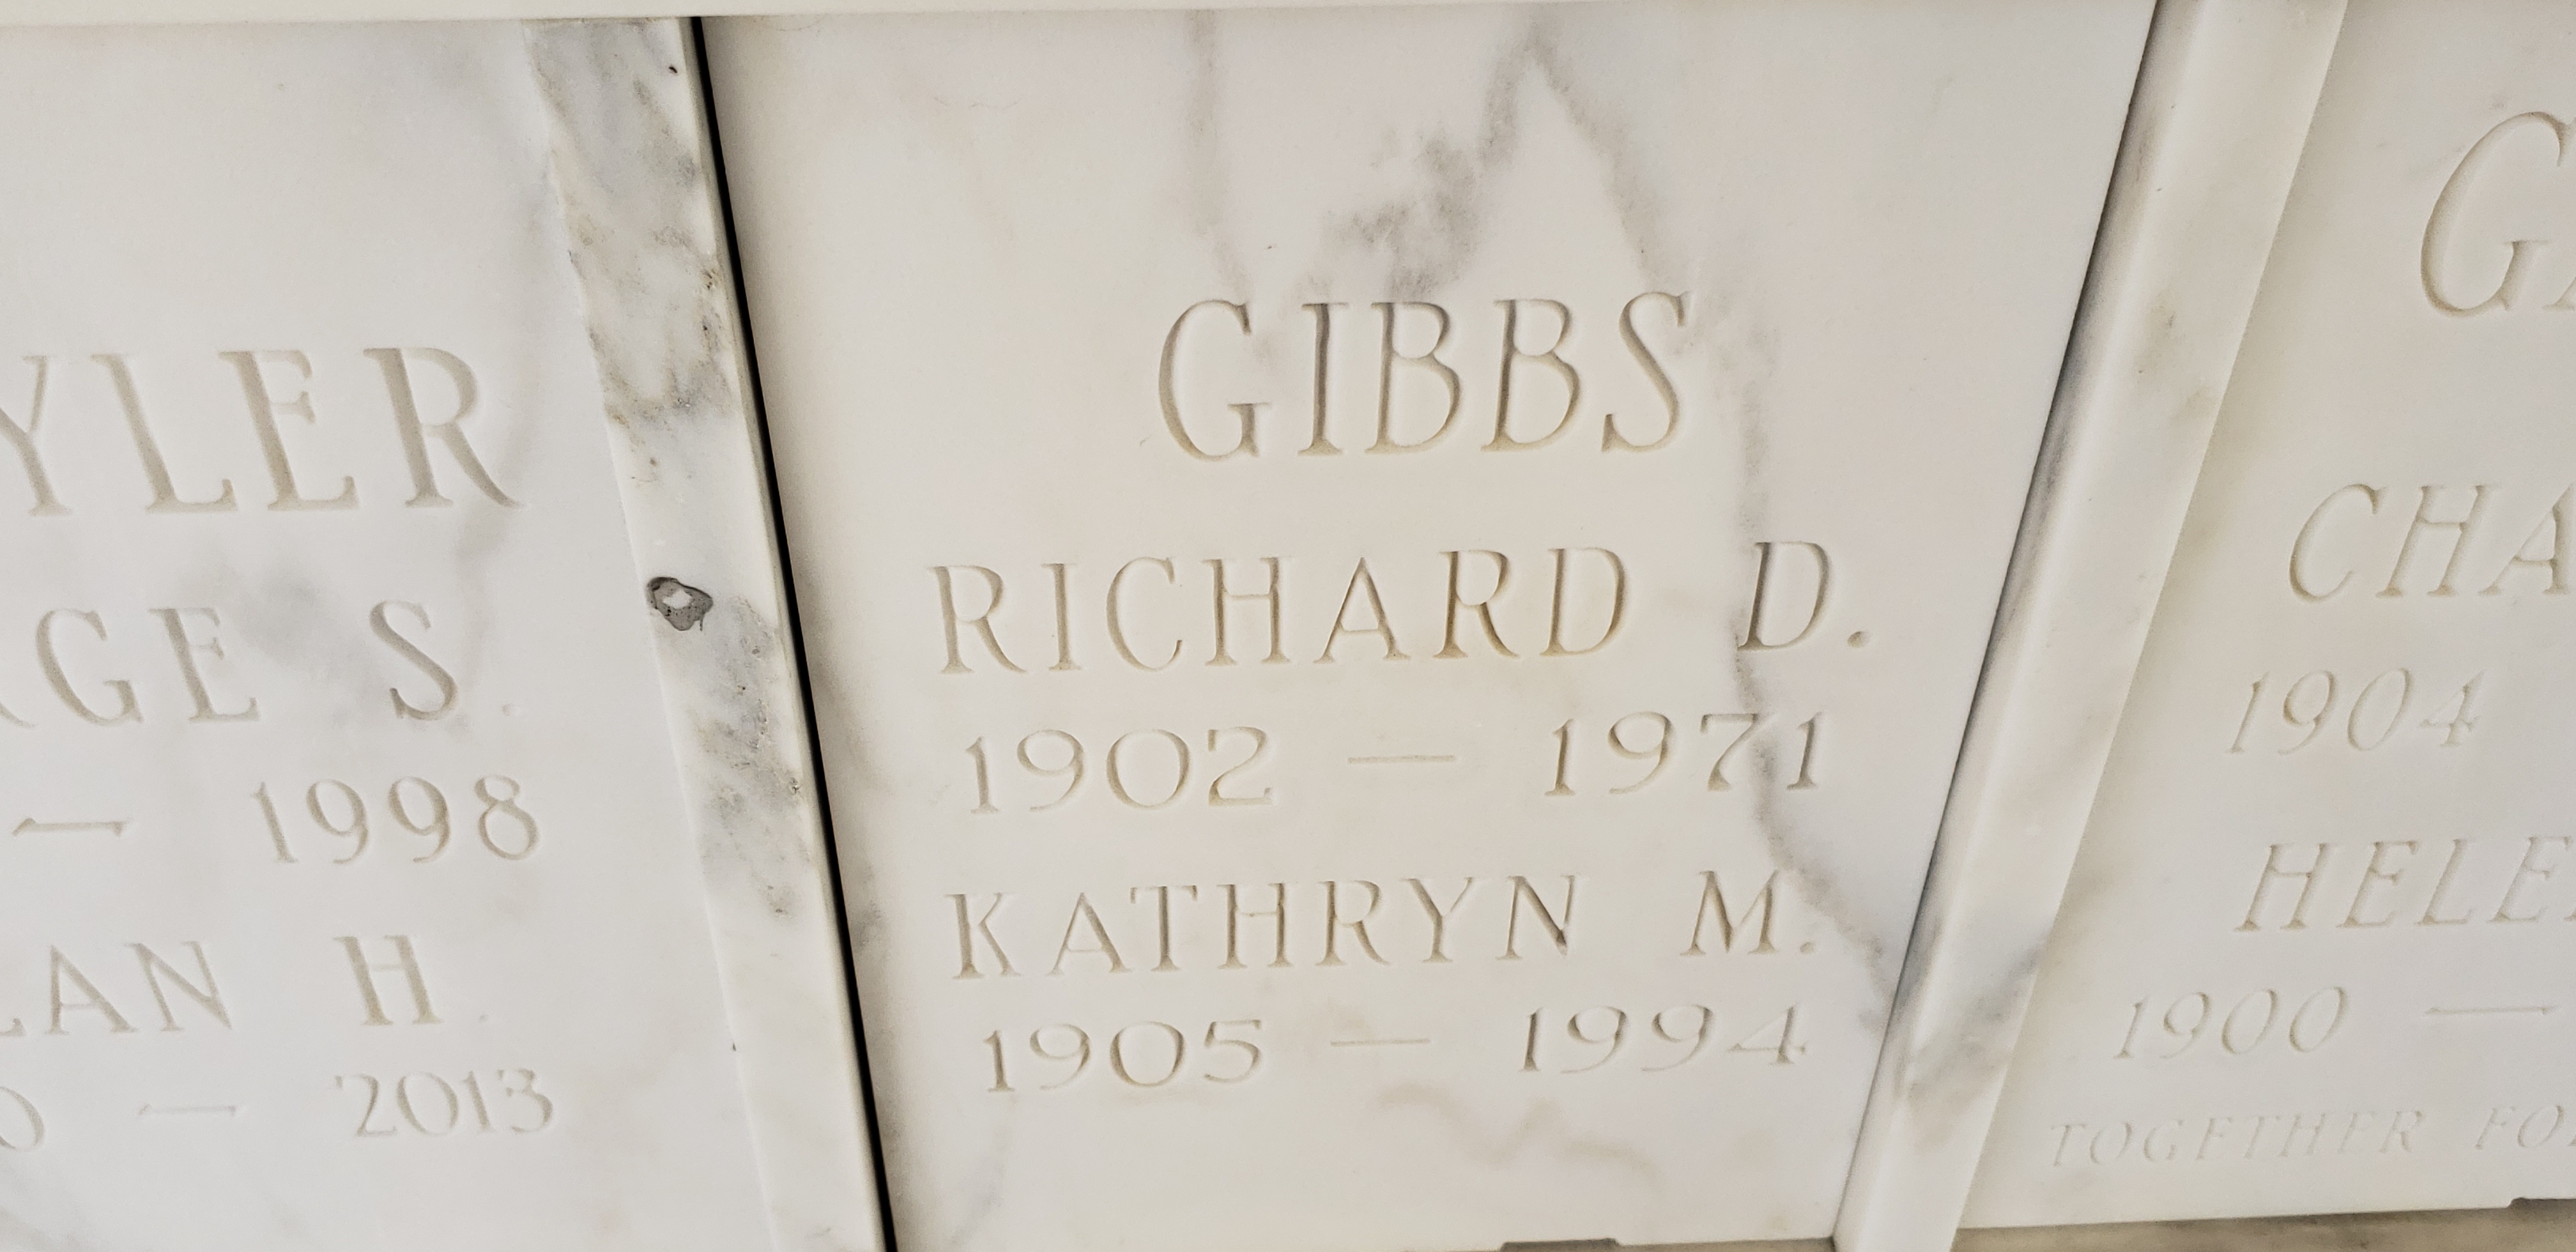 Richard D Gibbs